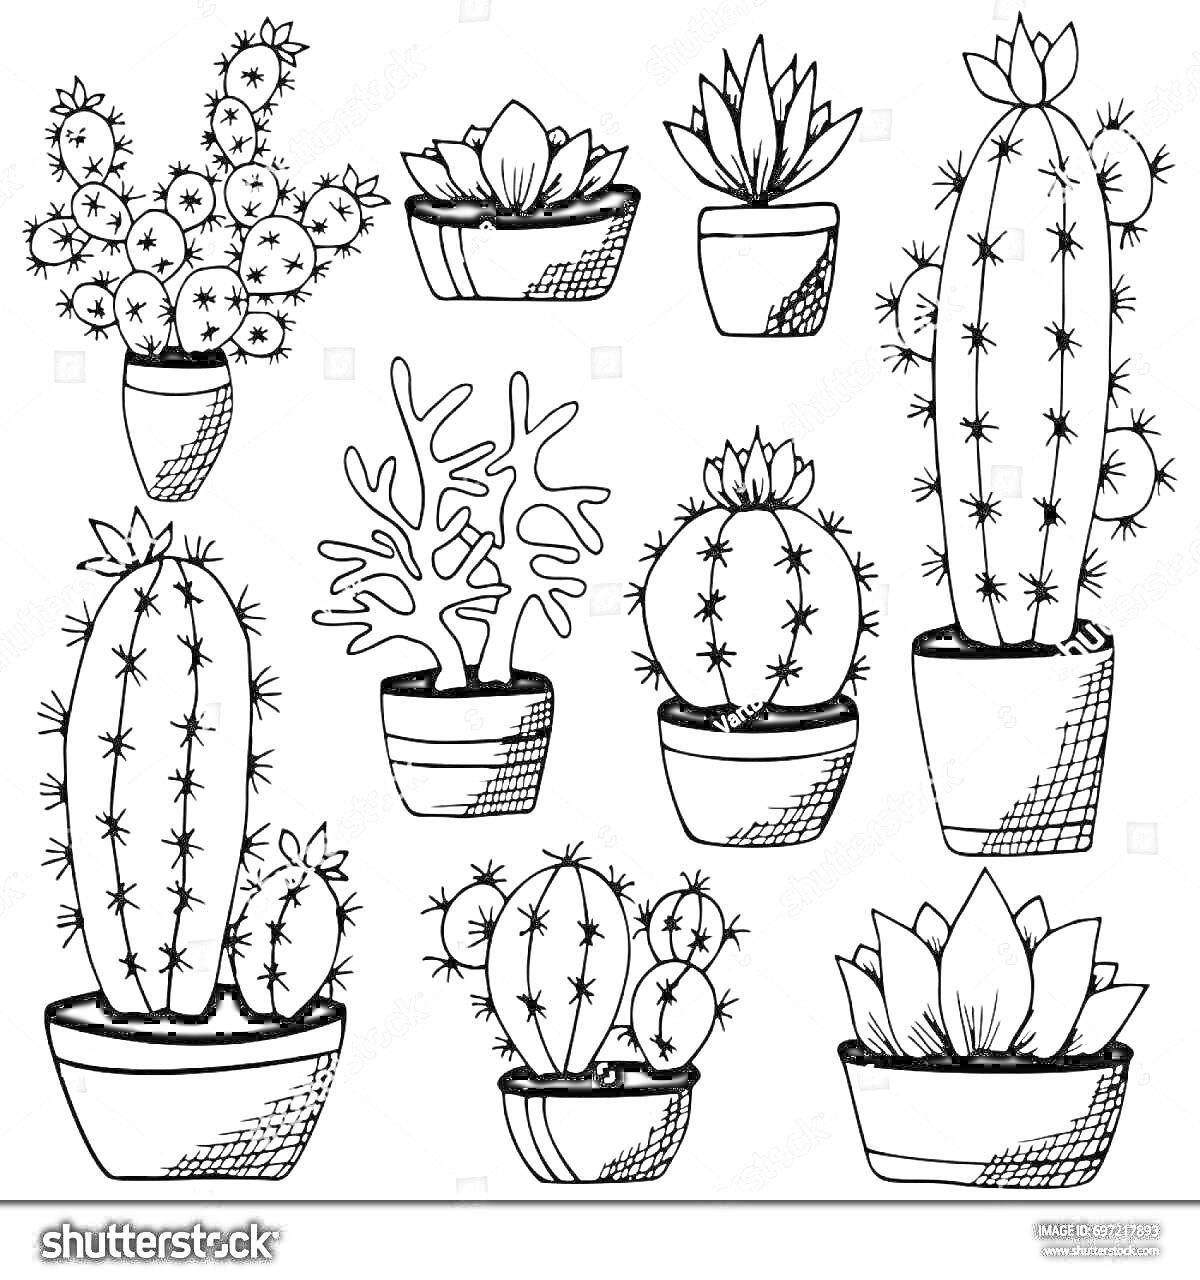 Раскраска Разные комнатные растения в горшках (кактусы и суккуленты)